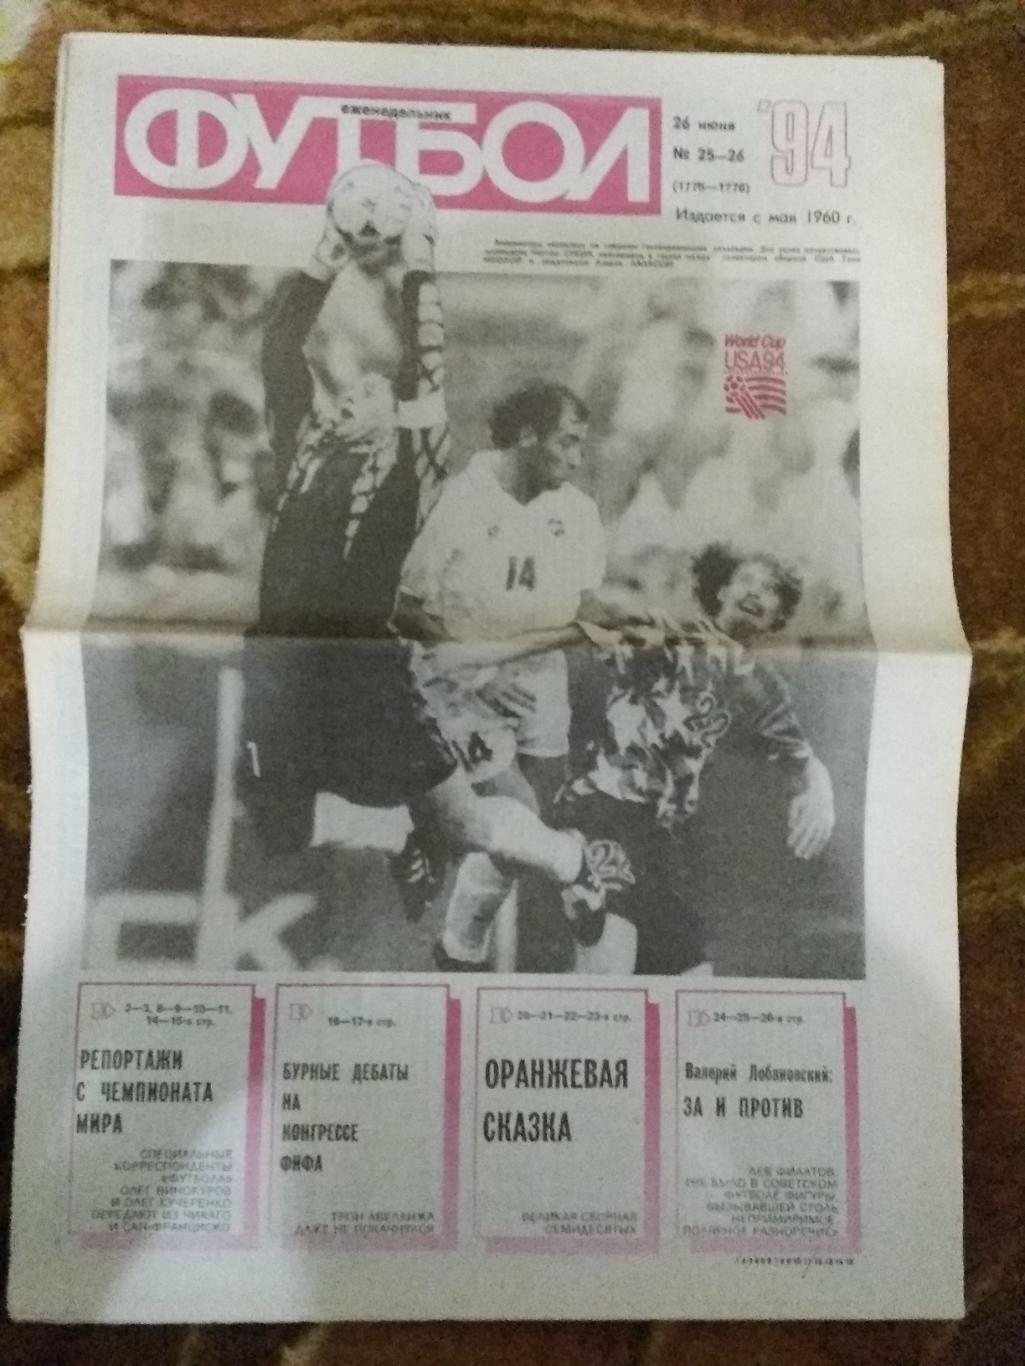 Футбол № 25-26 1994 г. (ЧМ США).